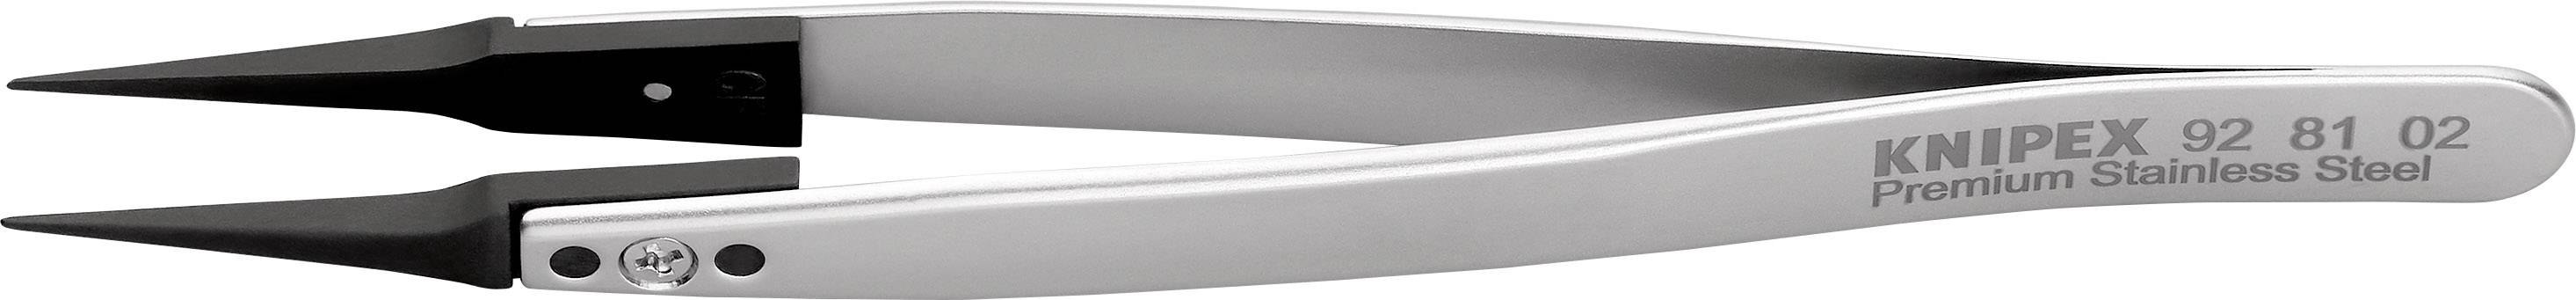 KNIPEX 92 81 02 ESD-Pinzette mit Wechselspitzen 1 Stück Spitz 130 mm